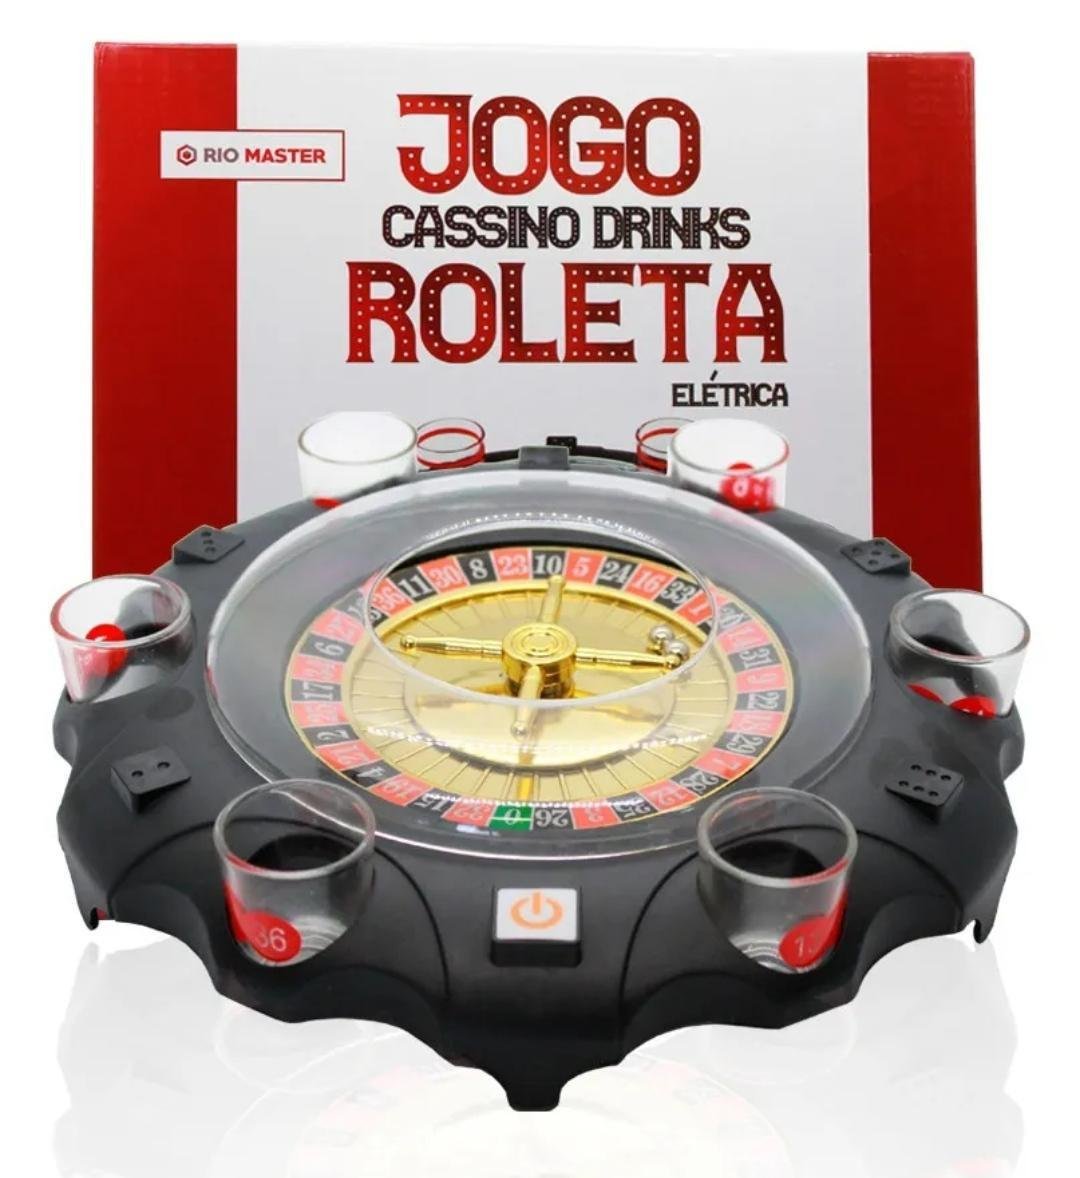 Jogo Cassino Drinks Roleta Eletrica Shot 6 Copos Automatico Rio Master Roleta Automática - 1